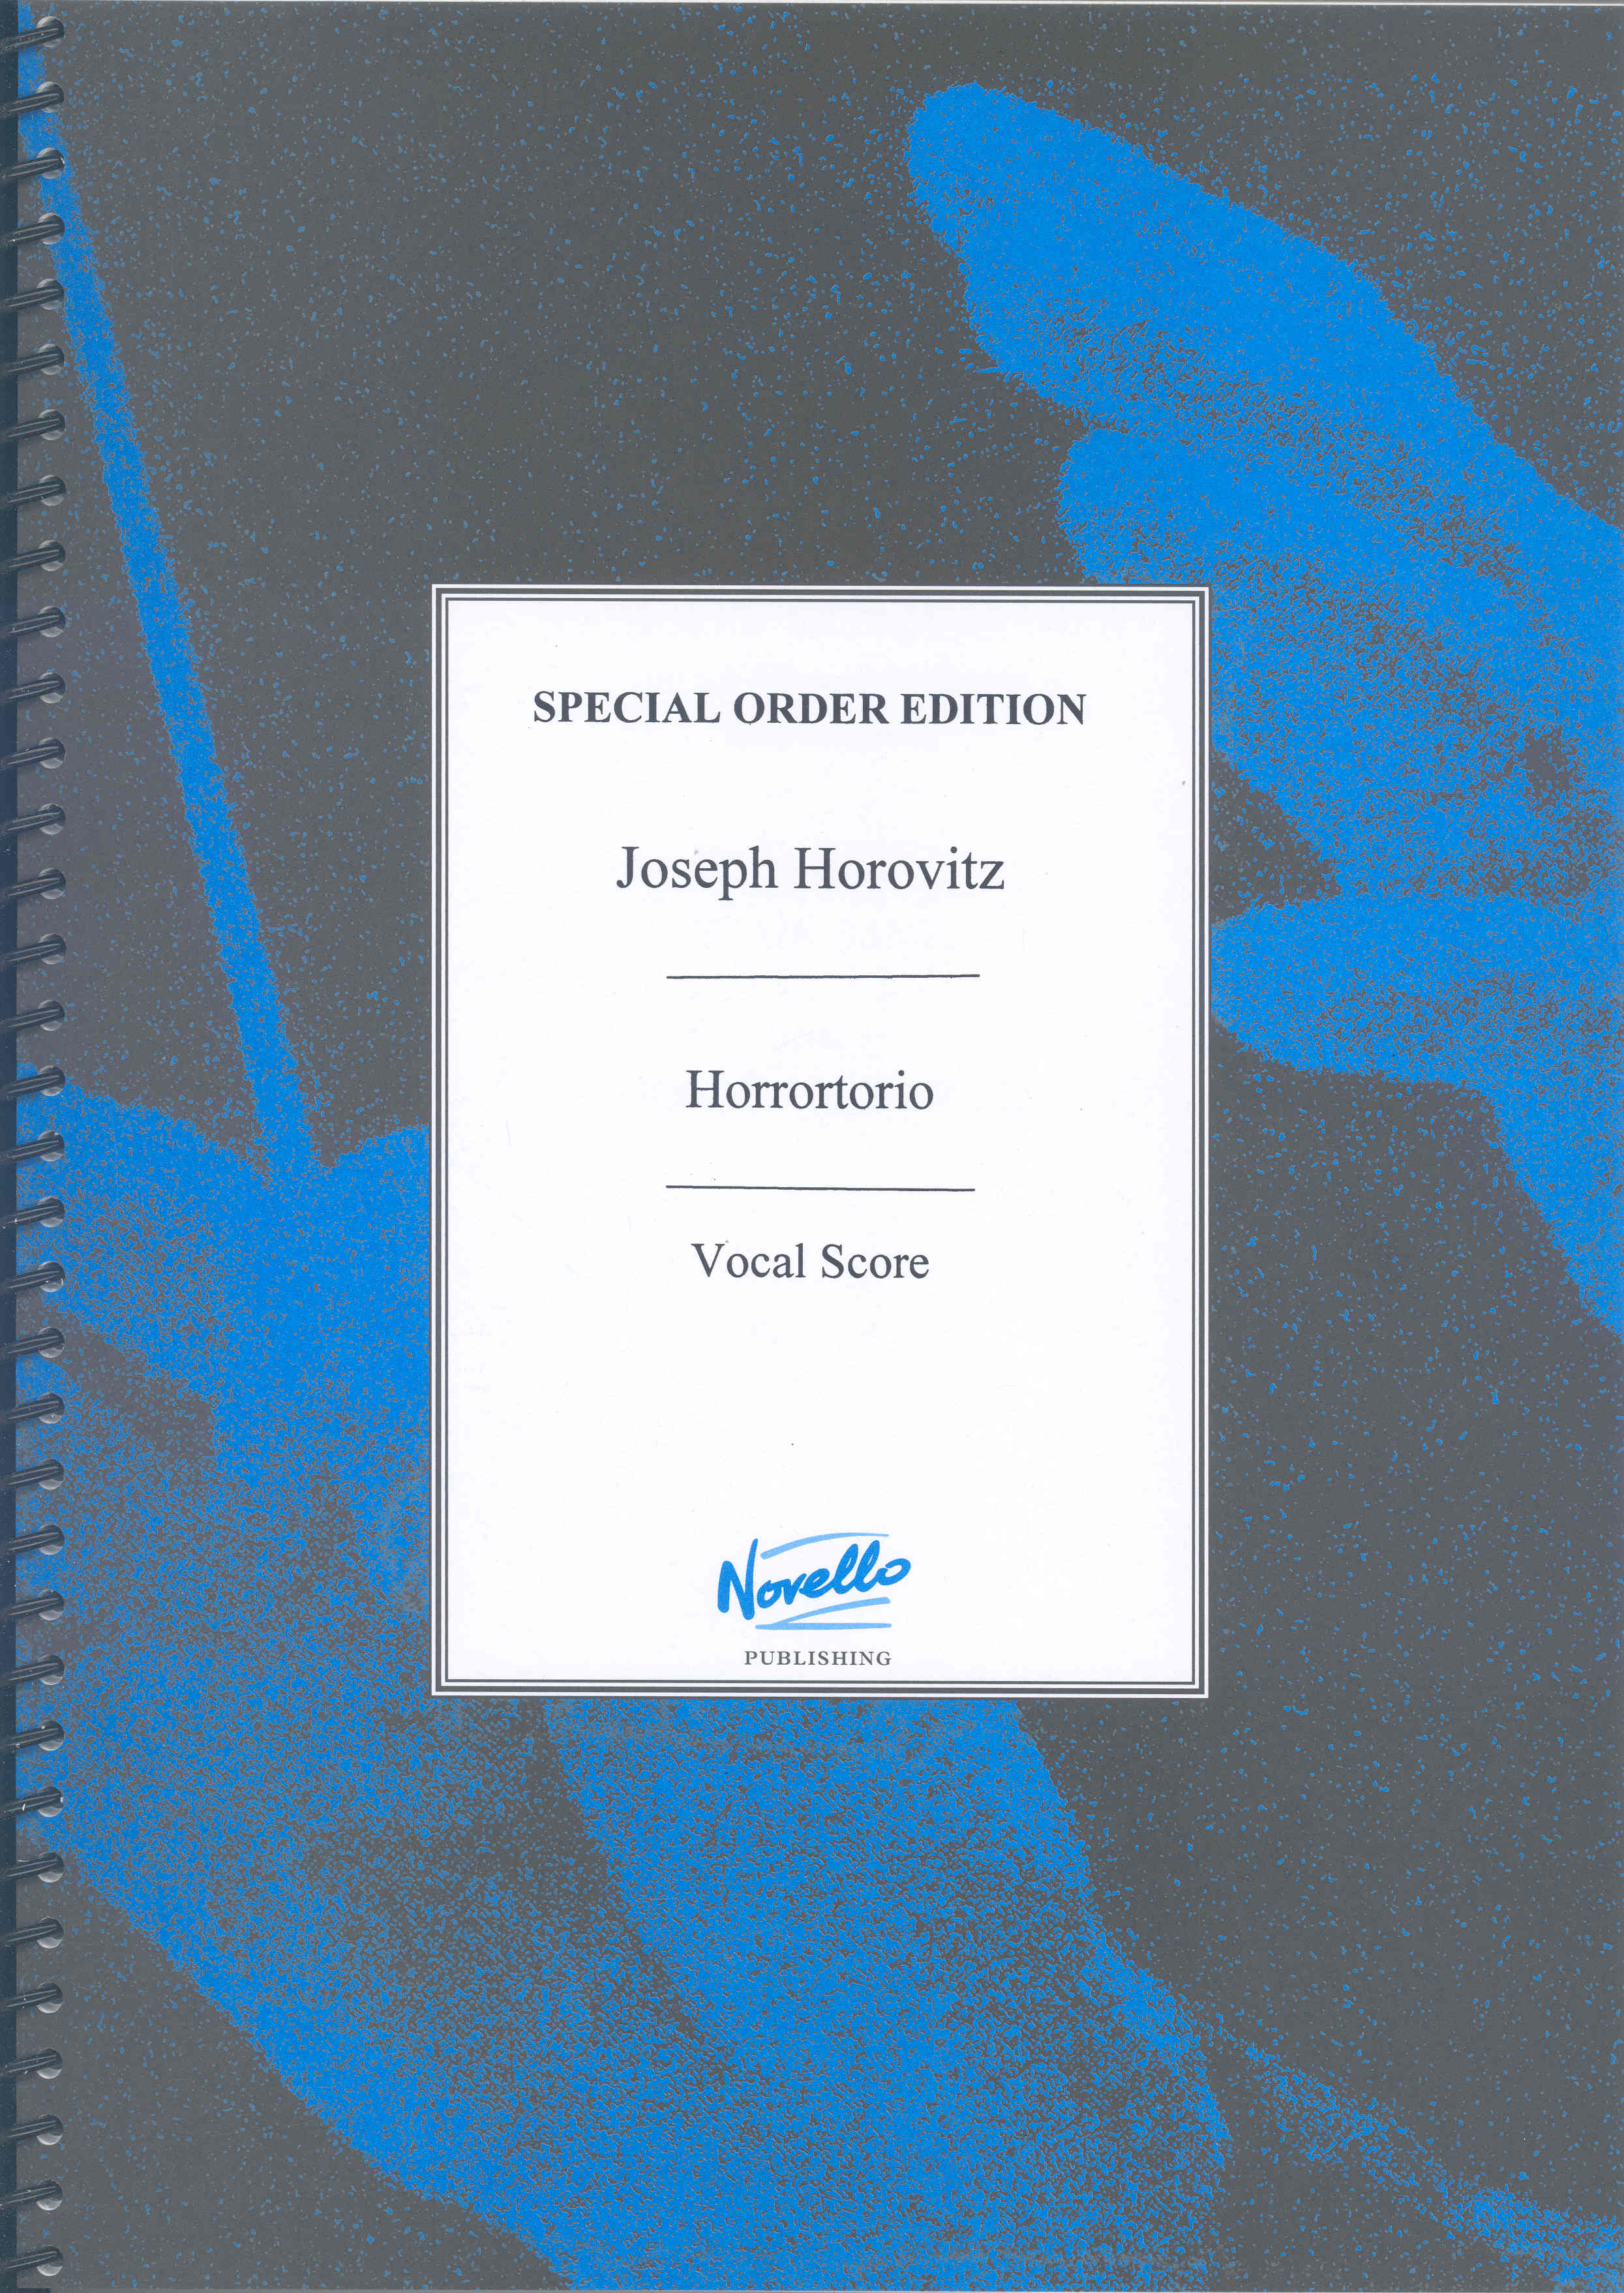 Horrortorio Horovitz Vocal Score Sheet Music Songbook